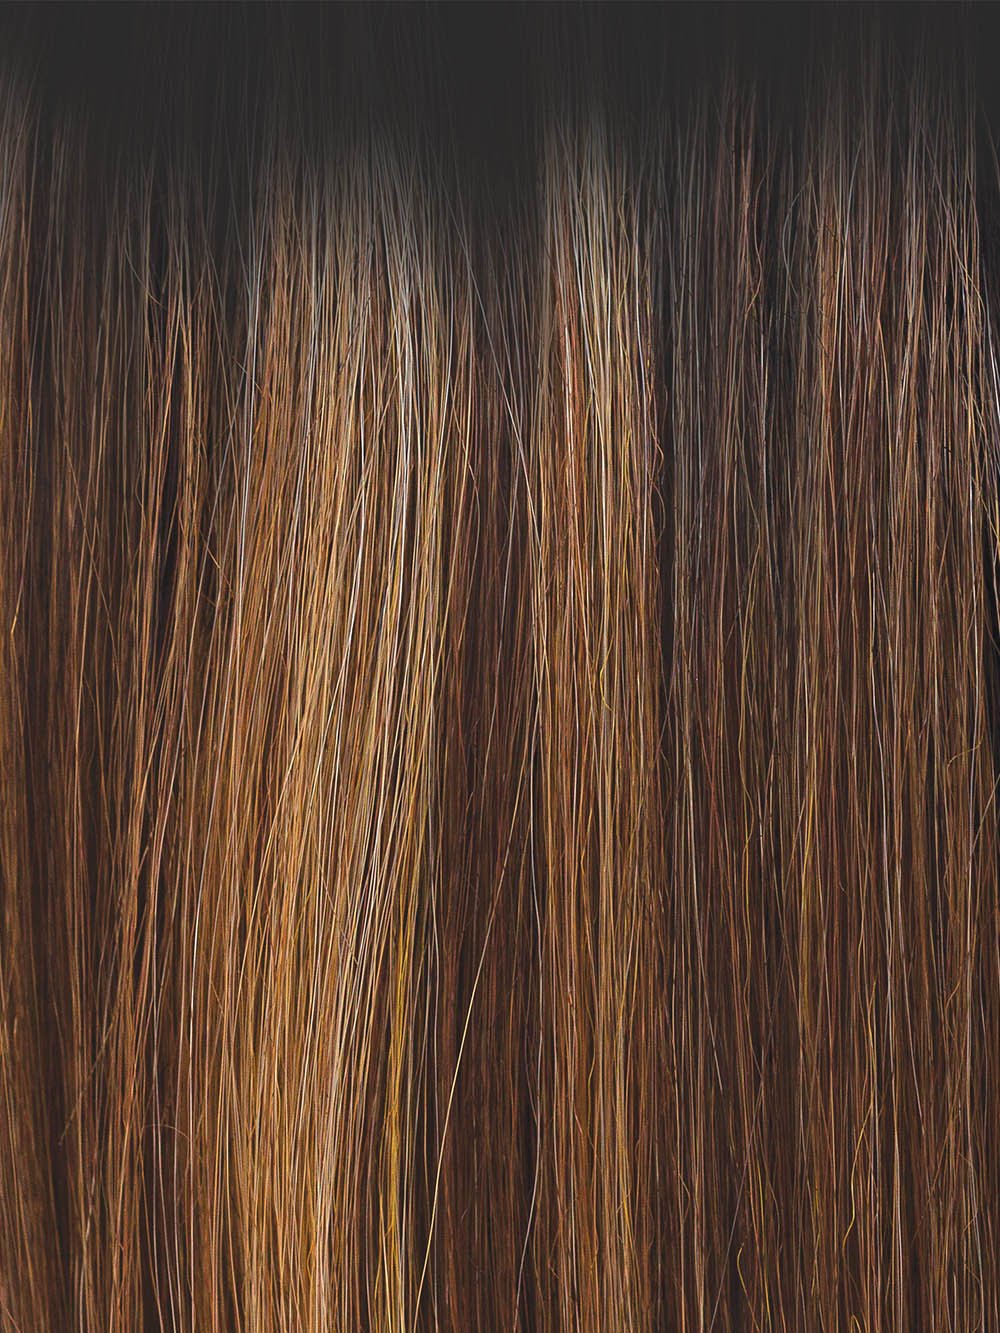 MOLTEN AMBER | Medium Golden Brown, Light Copper Brown, and Medium Golden  Blonde with Dark Brown Roots